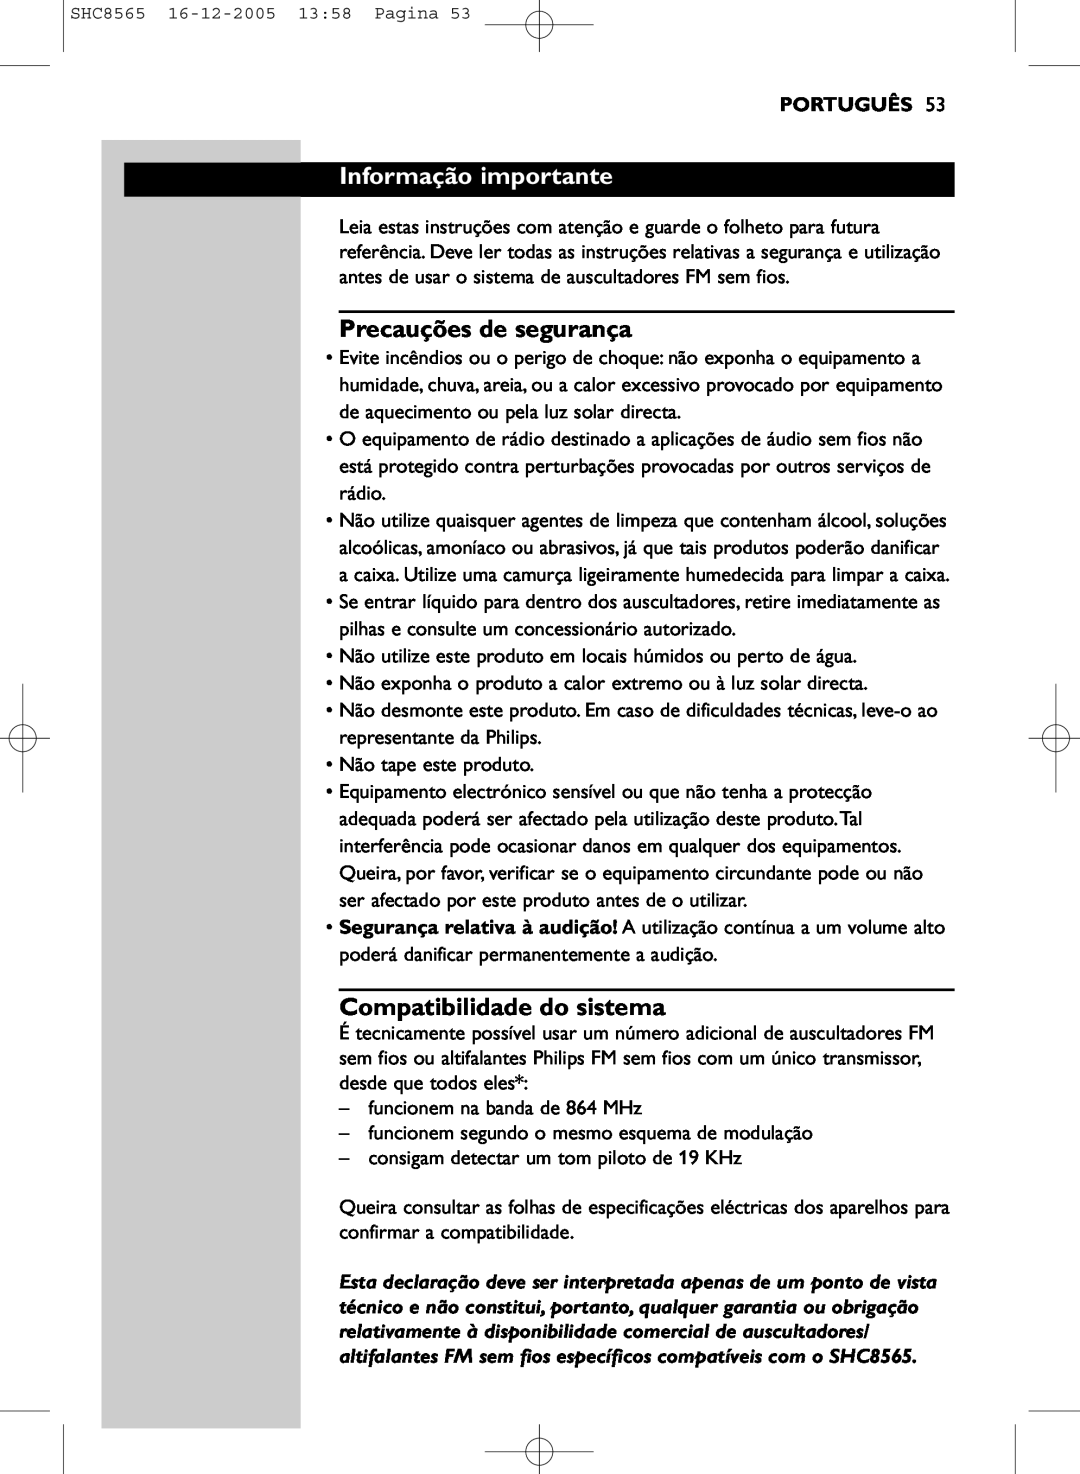 Philips SHC8565 manual Informação importante, Precauções de segurança, Compatibilidade do sistema, Português 